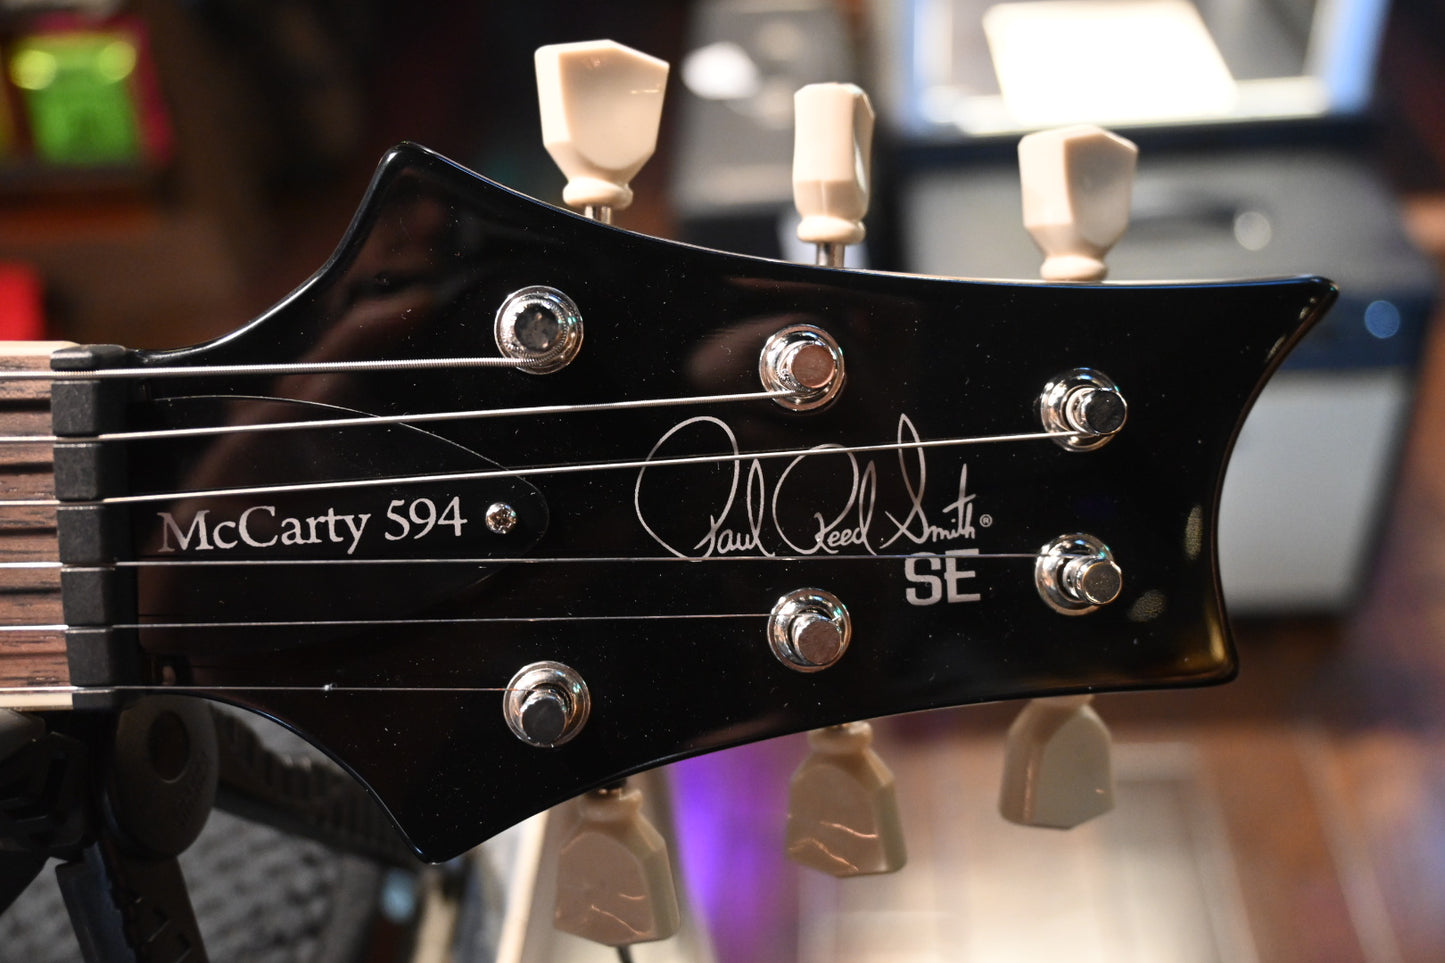 PRS SE McCarty SC 594 Single-Cut - Black Gold Sunburst Guitar #1649 - Danville Music